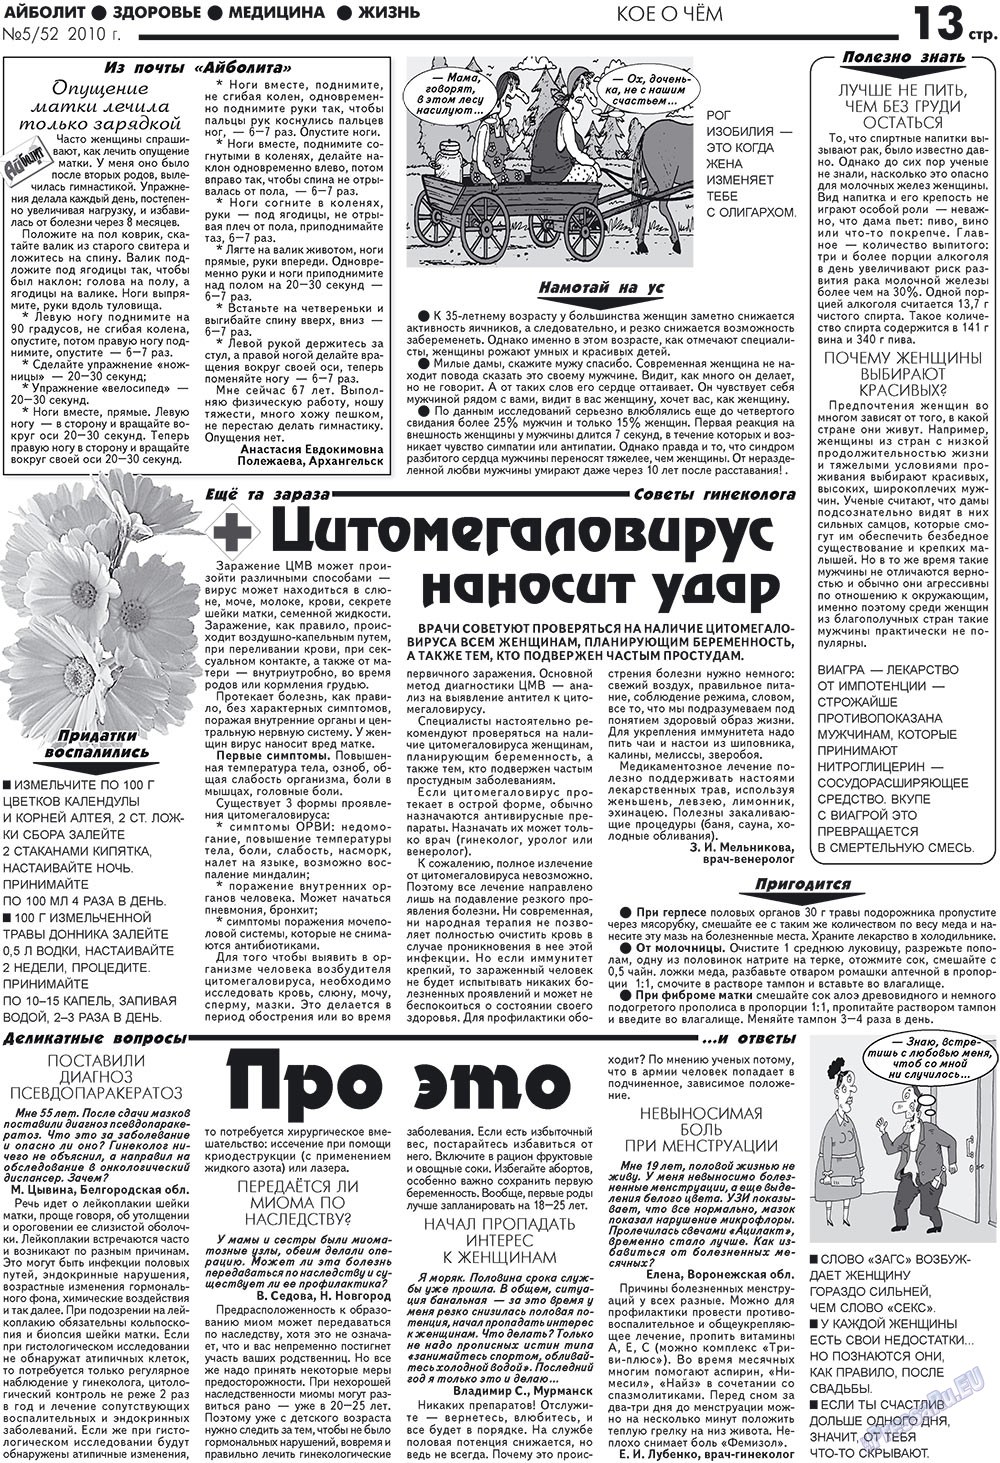 АйБолит, газета. 2010 №5 стр.13